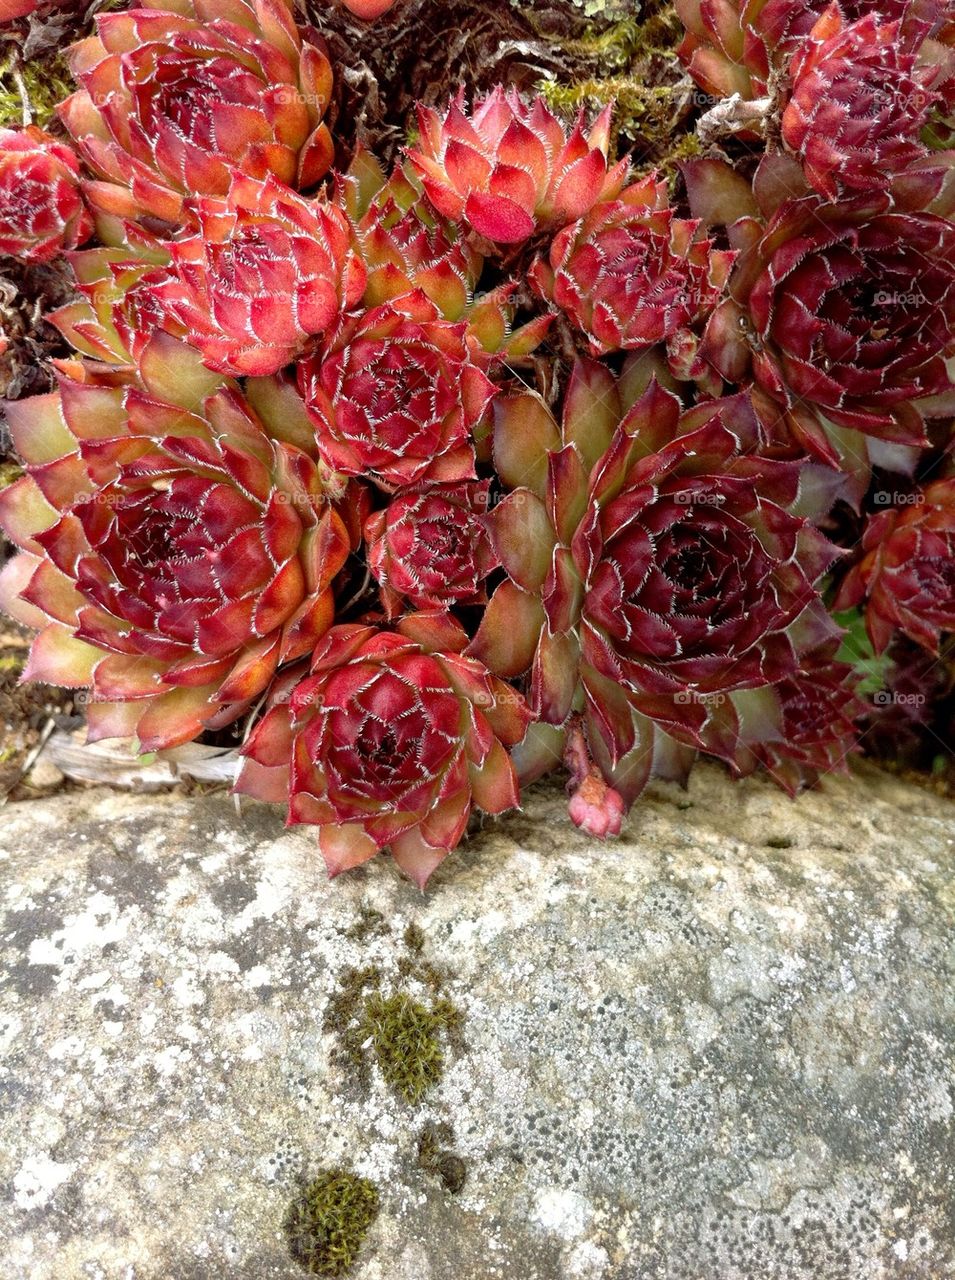 Red stonecrop plants in rock garden.